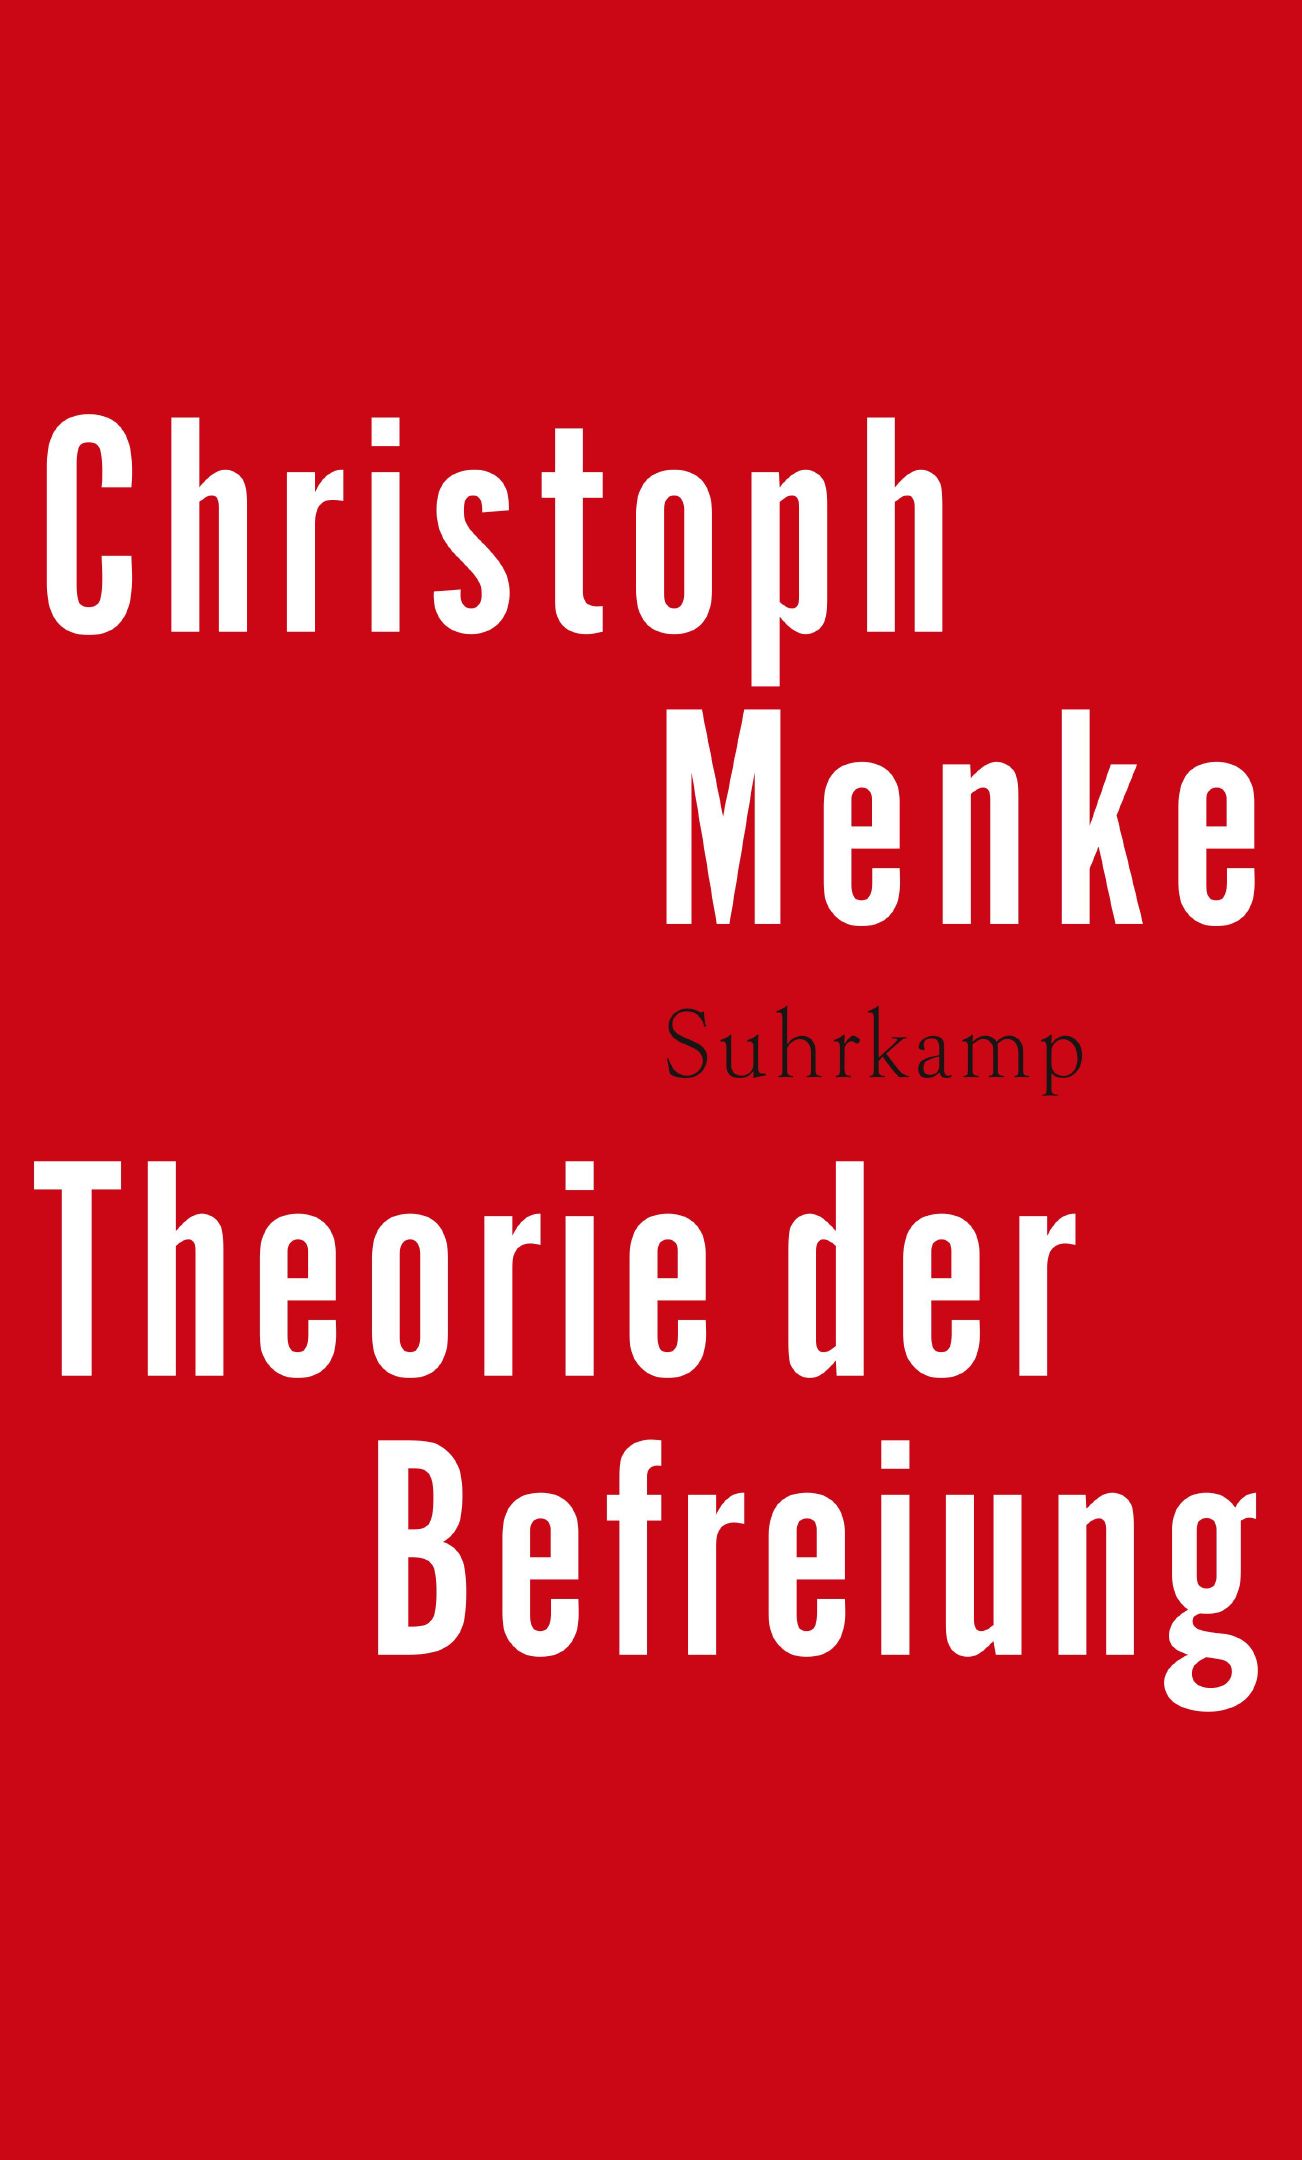 Das Cover des Buches "Theorie der Befreiung" von Christoph Menke enthält den Buchtitel in weißer Schrift auf rotem Untergrund.